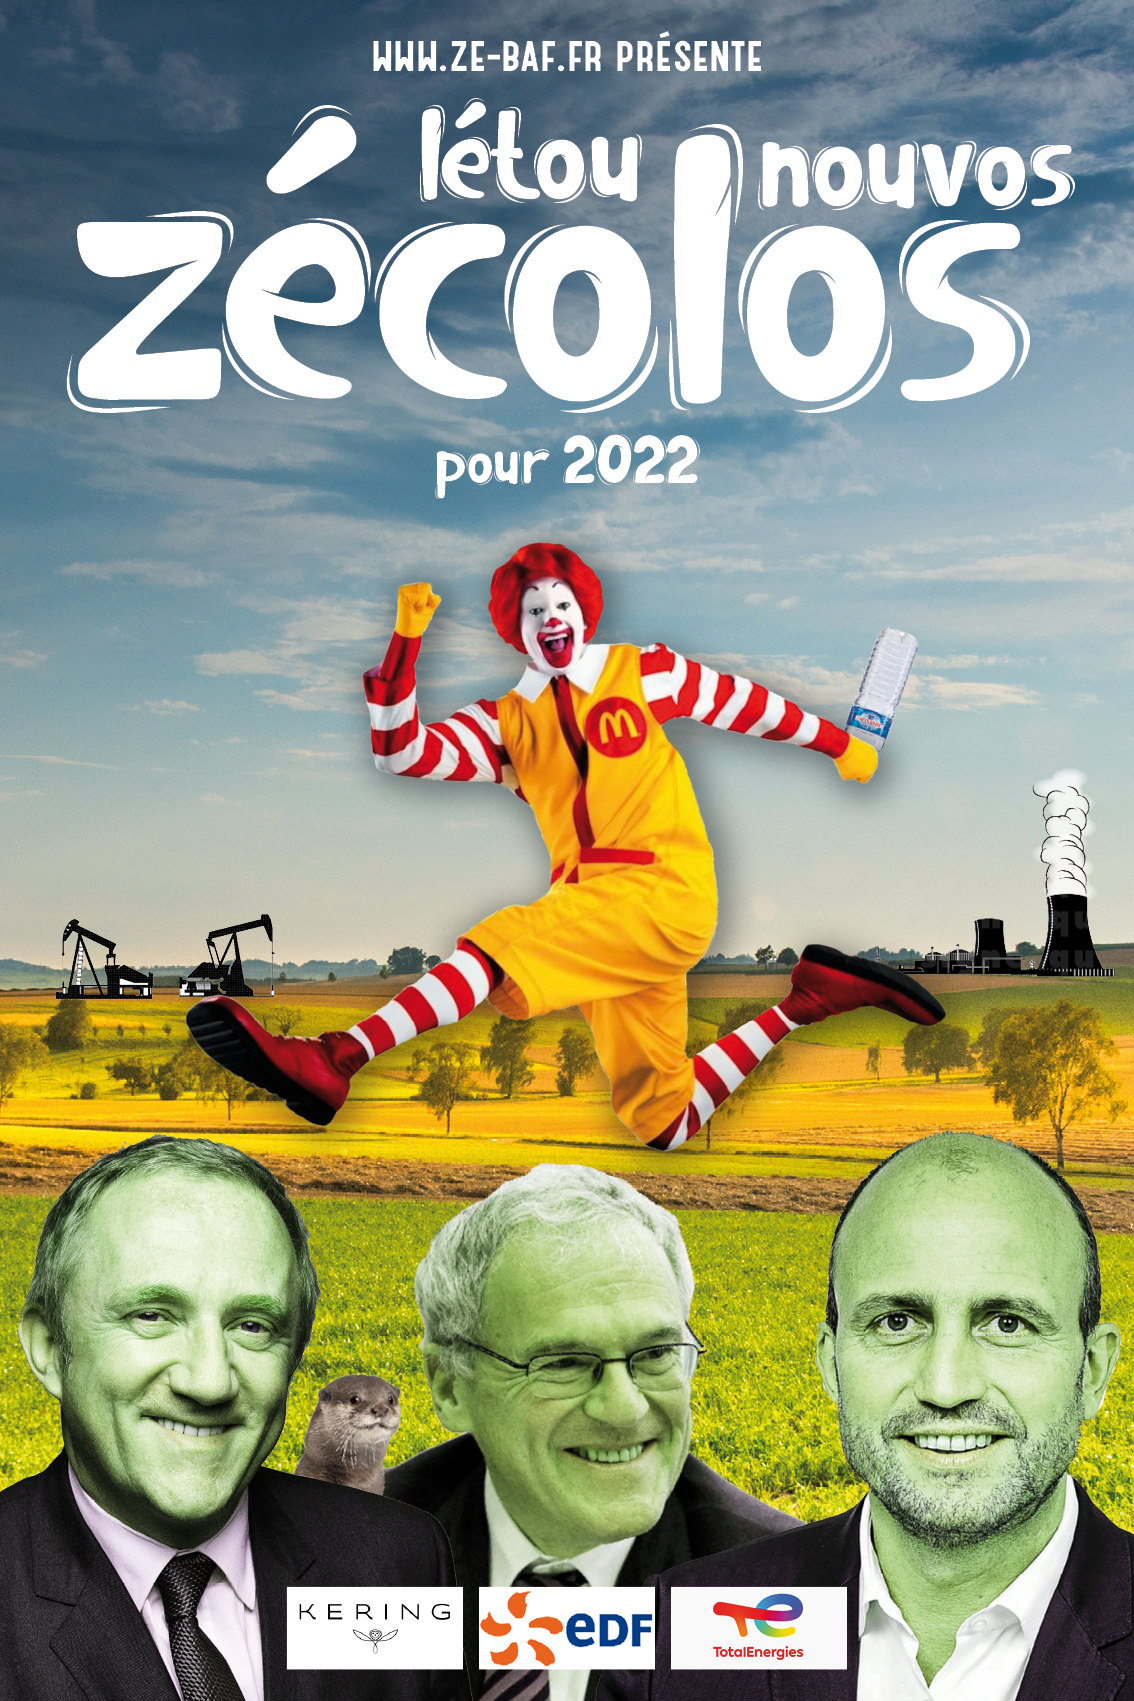 Létounouvos Zécolos – La campagne 2022 est lancée !